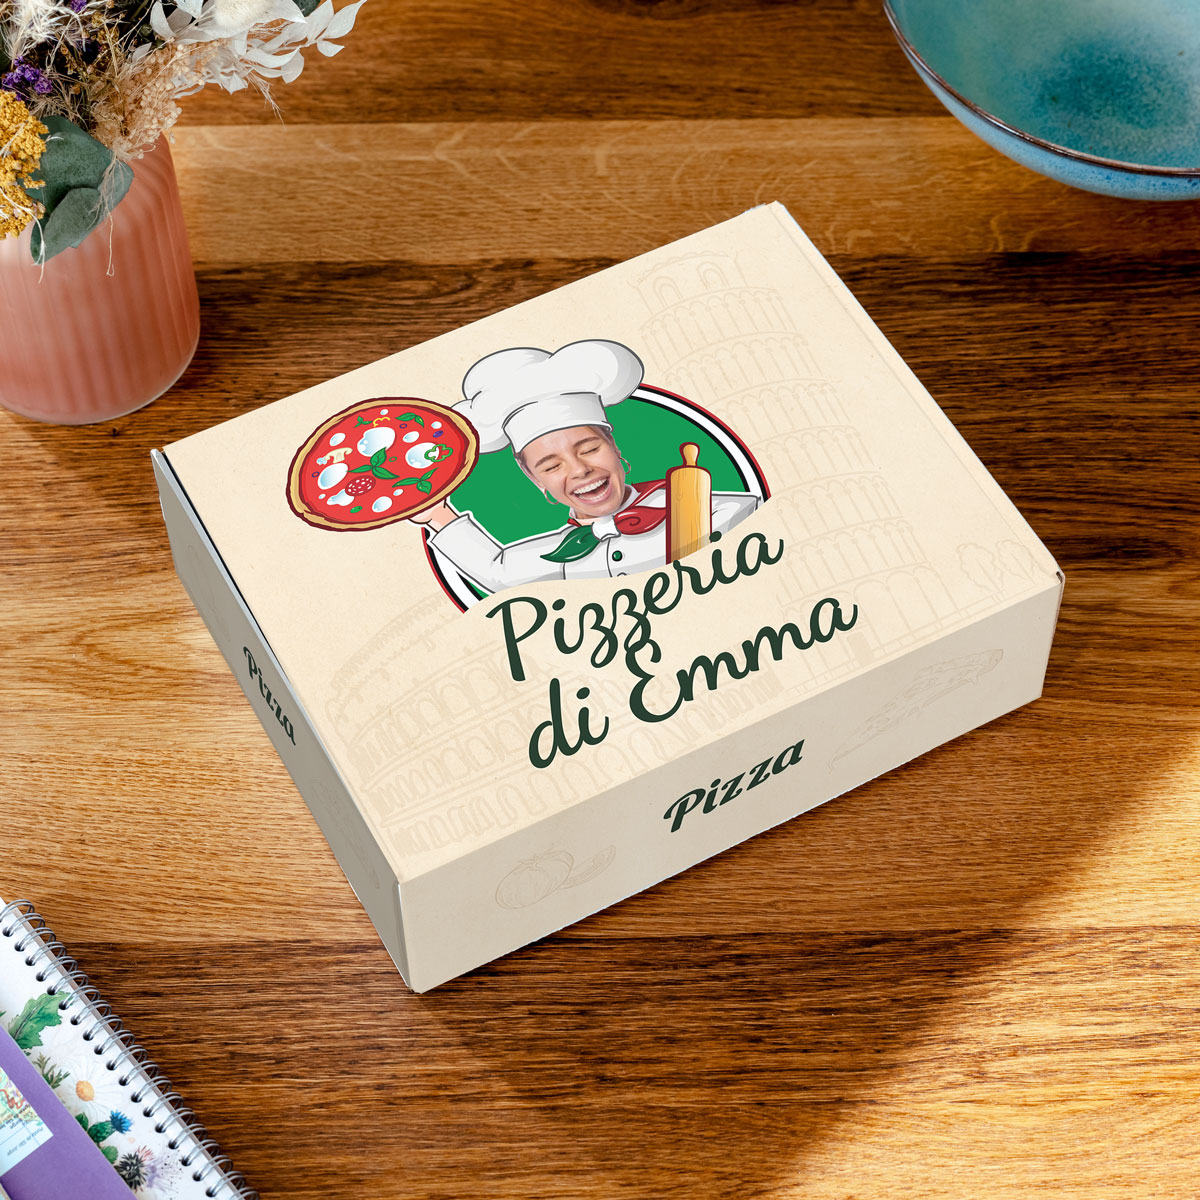 Personalisierbare Geschenkbox 30 x 23,5 cm im Pizzakarton-Style